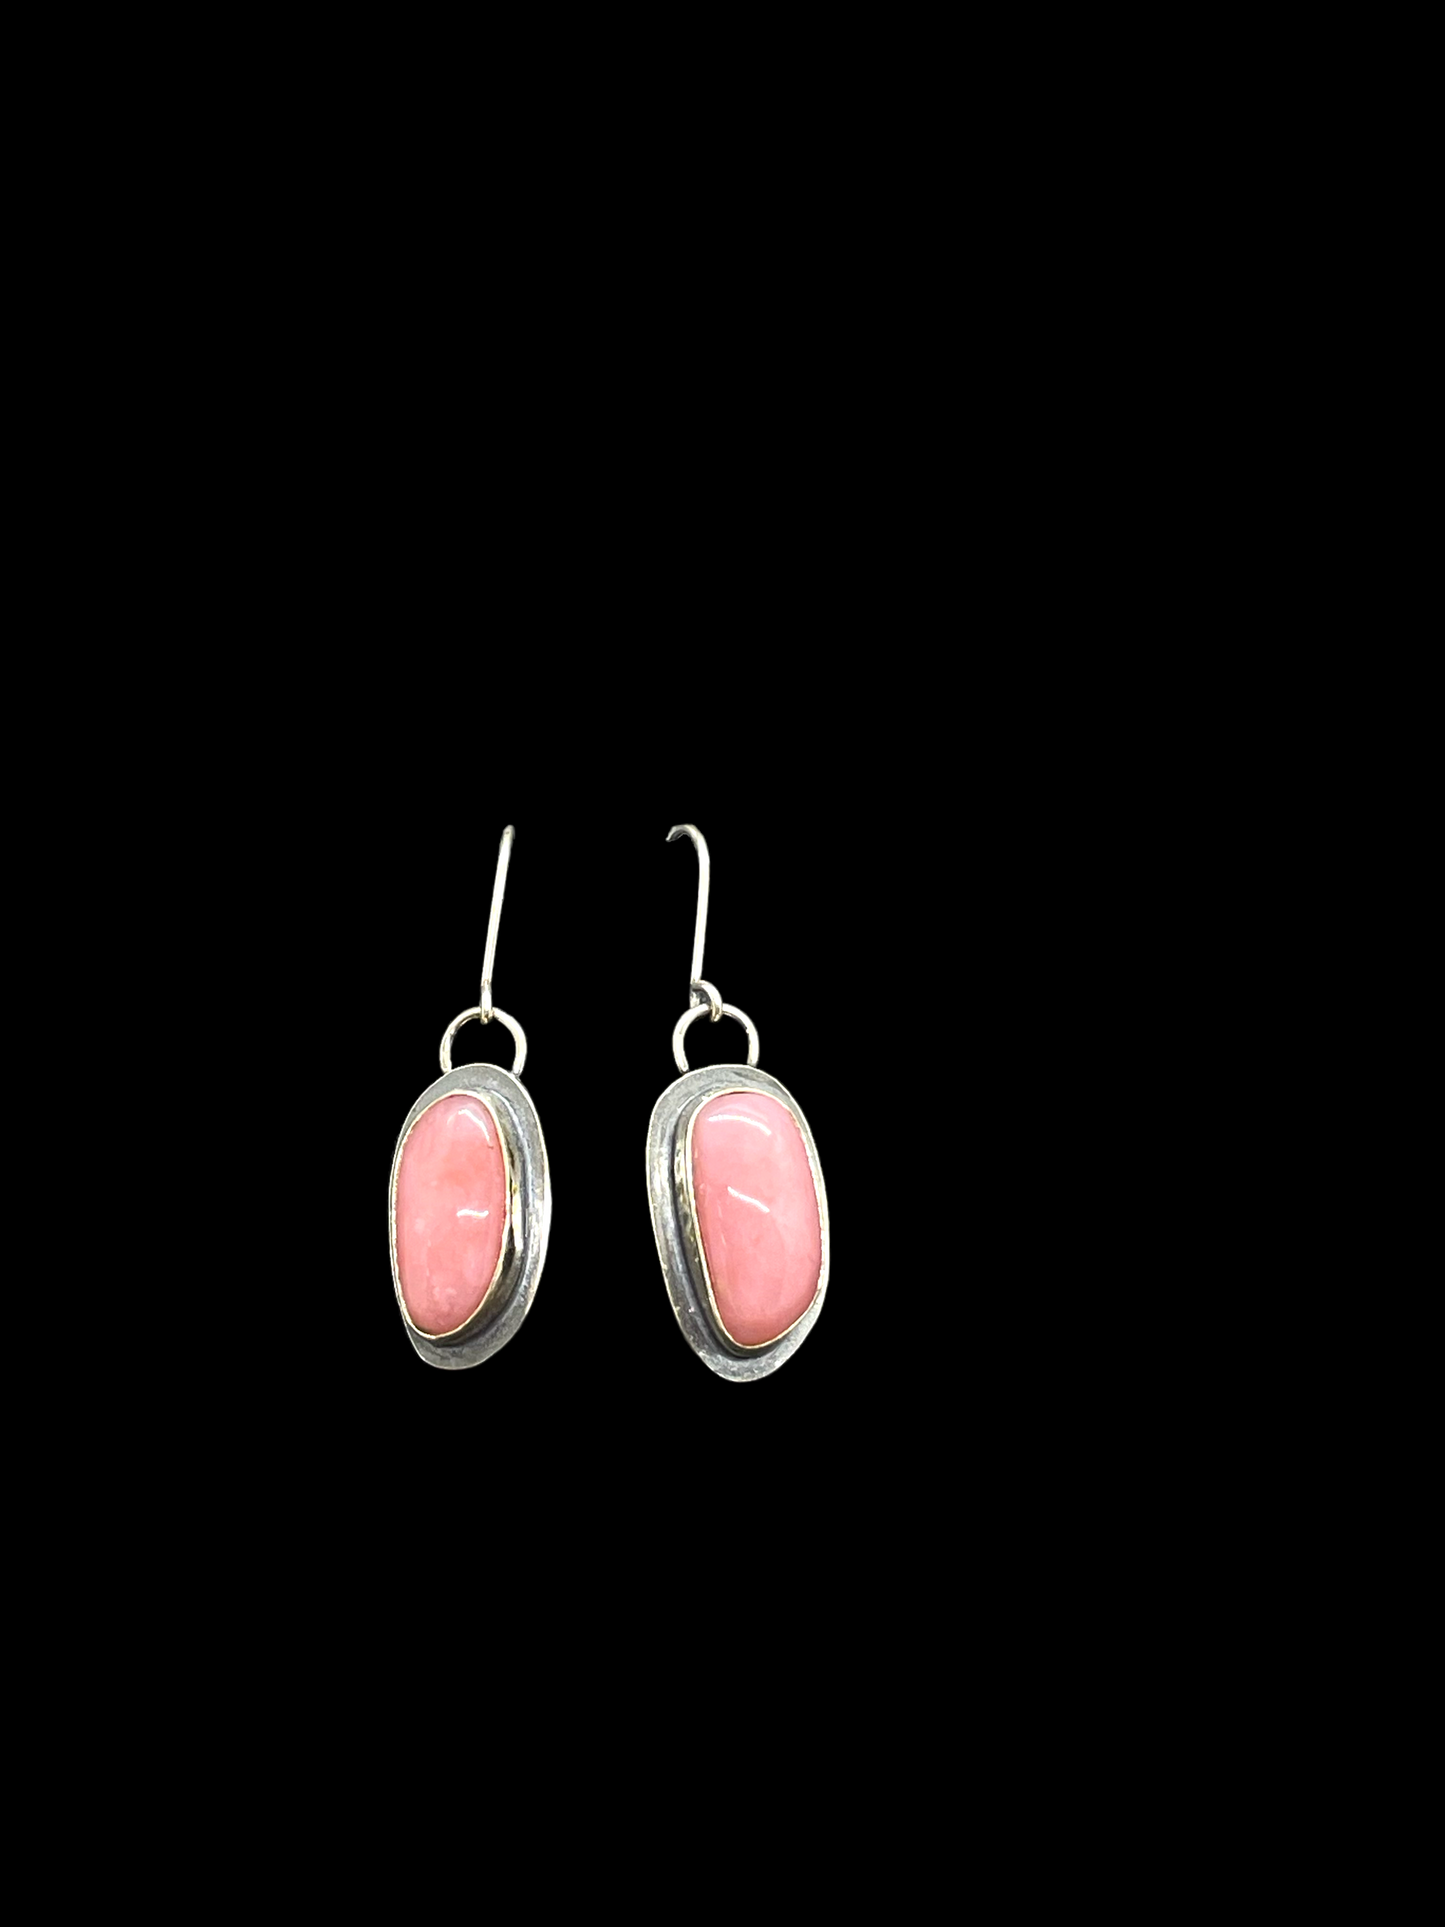 Pink opal earrings